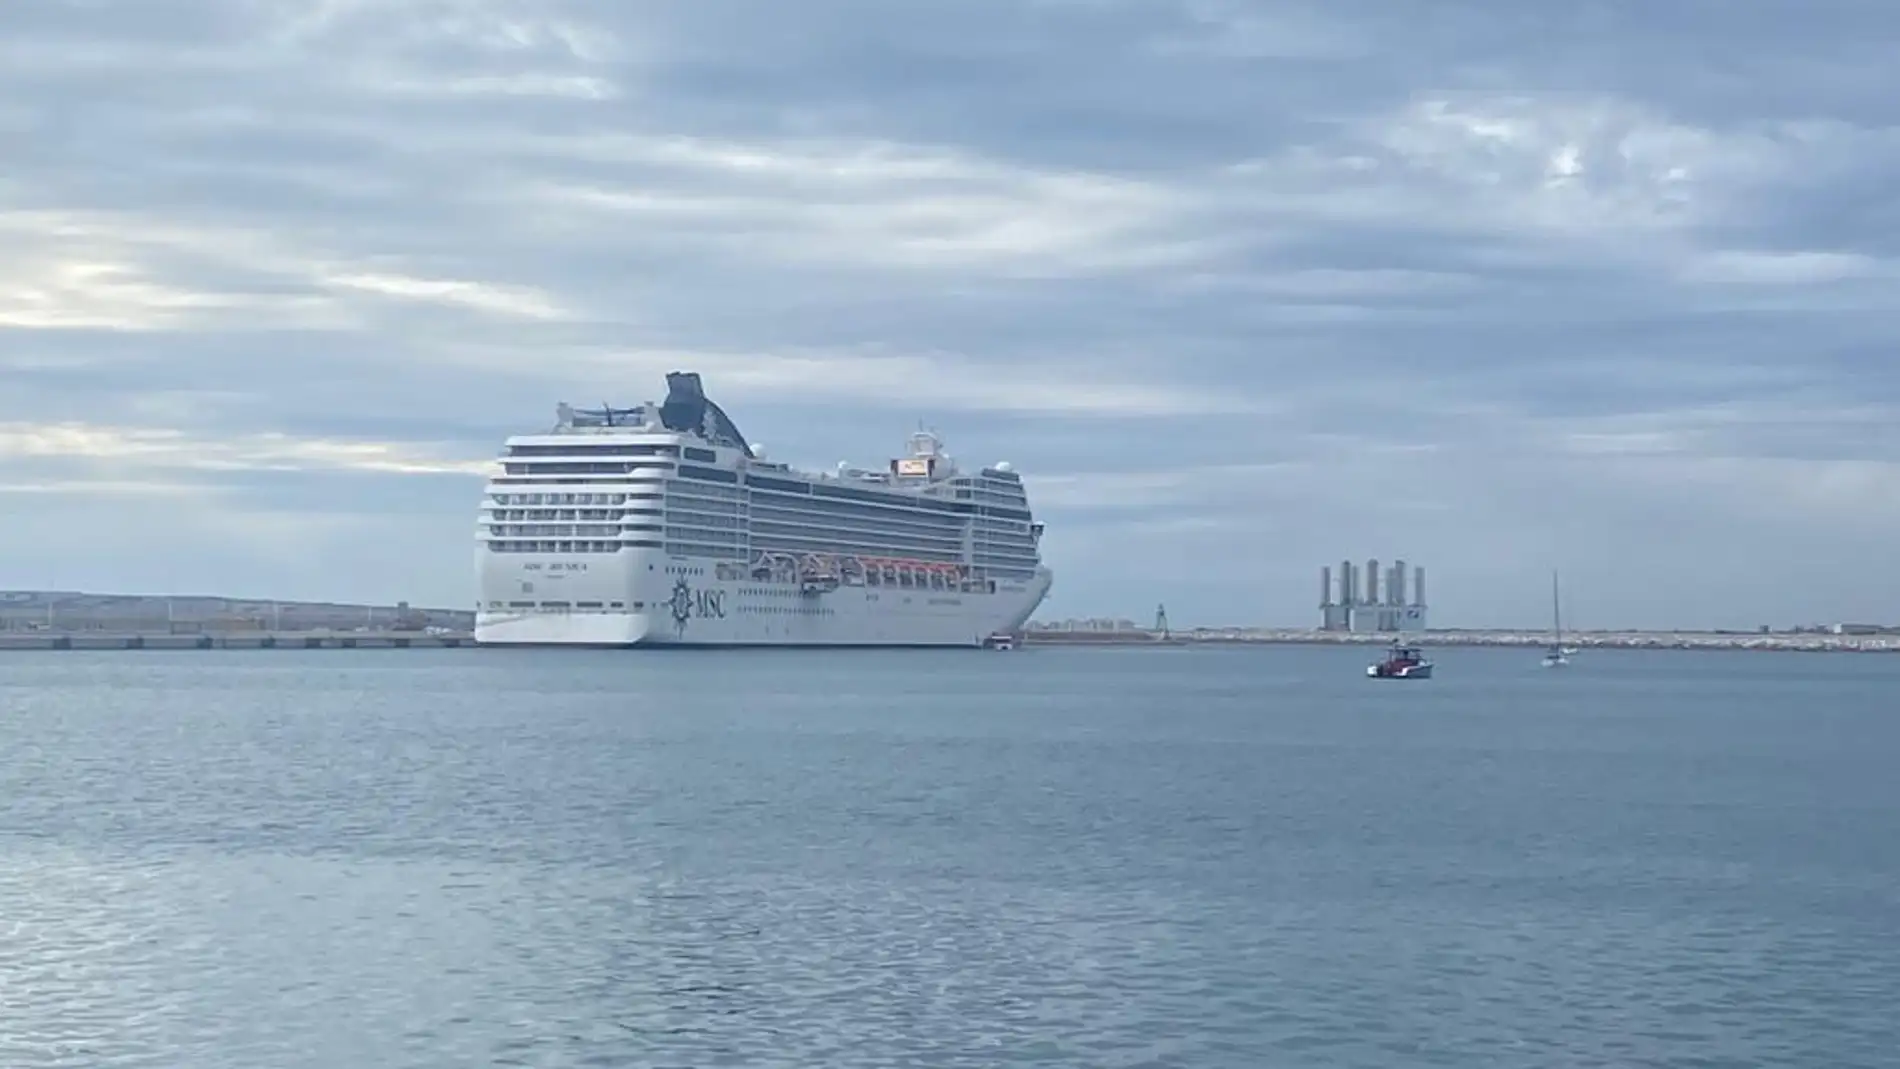 Cerca de 30.000 cruceristas visitan Alicante en los dos últimos meses del año